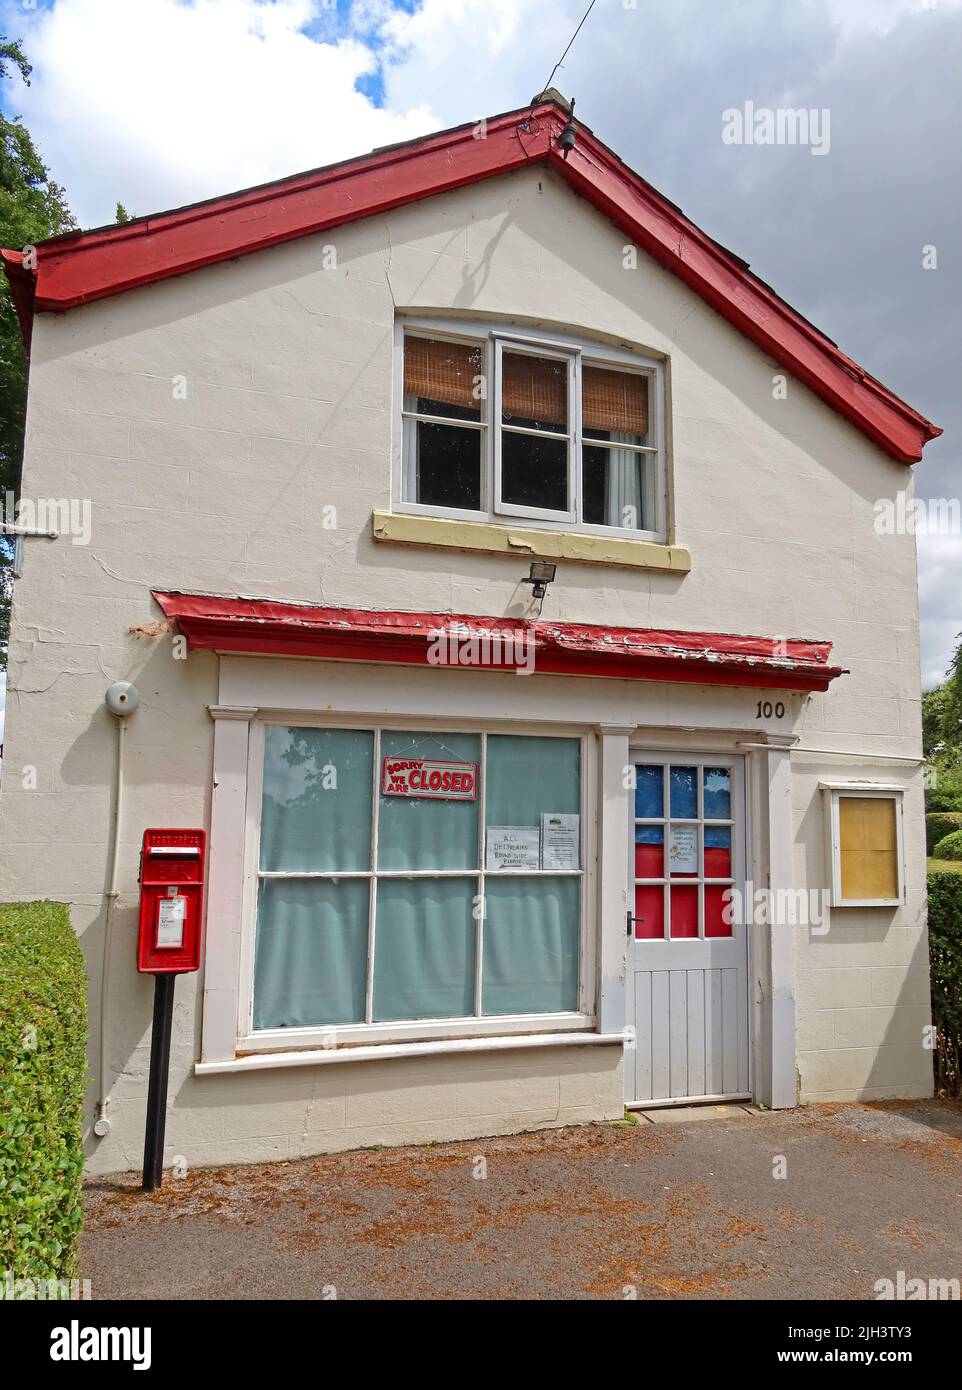 Der Dunham Massey-Laden im Landdorf, ein Ex-Postamt verloren, jetzt geschlossen, Woodhouse LN, Bowden, Altrincham, Cheshire, England, Großbritannien, WA14 5SB Stockfoto